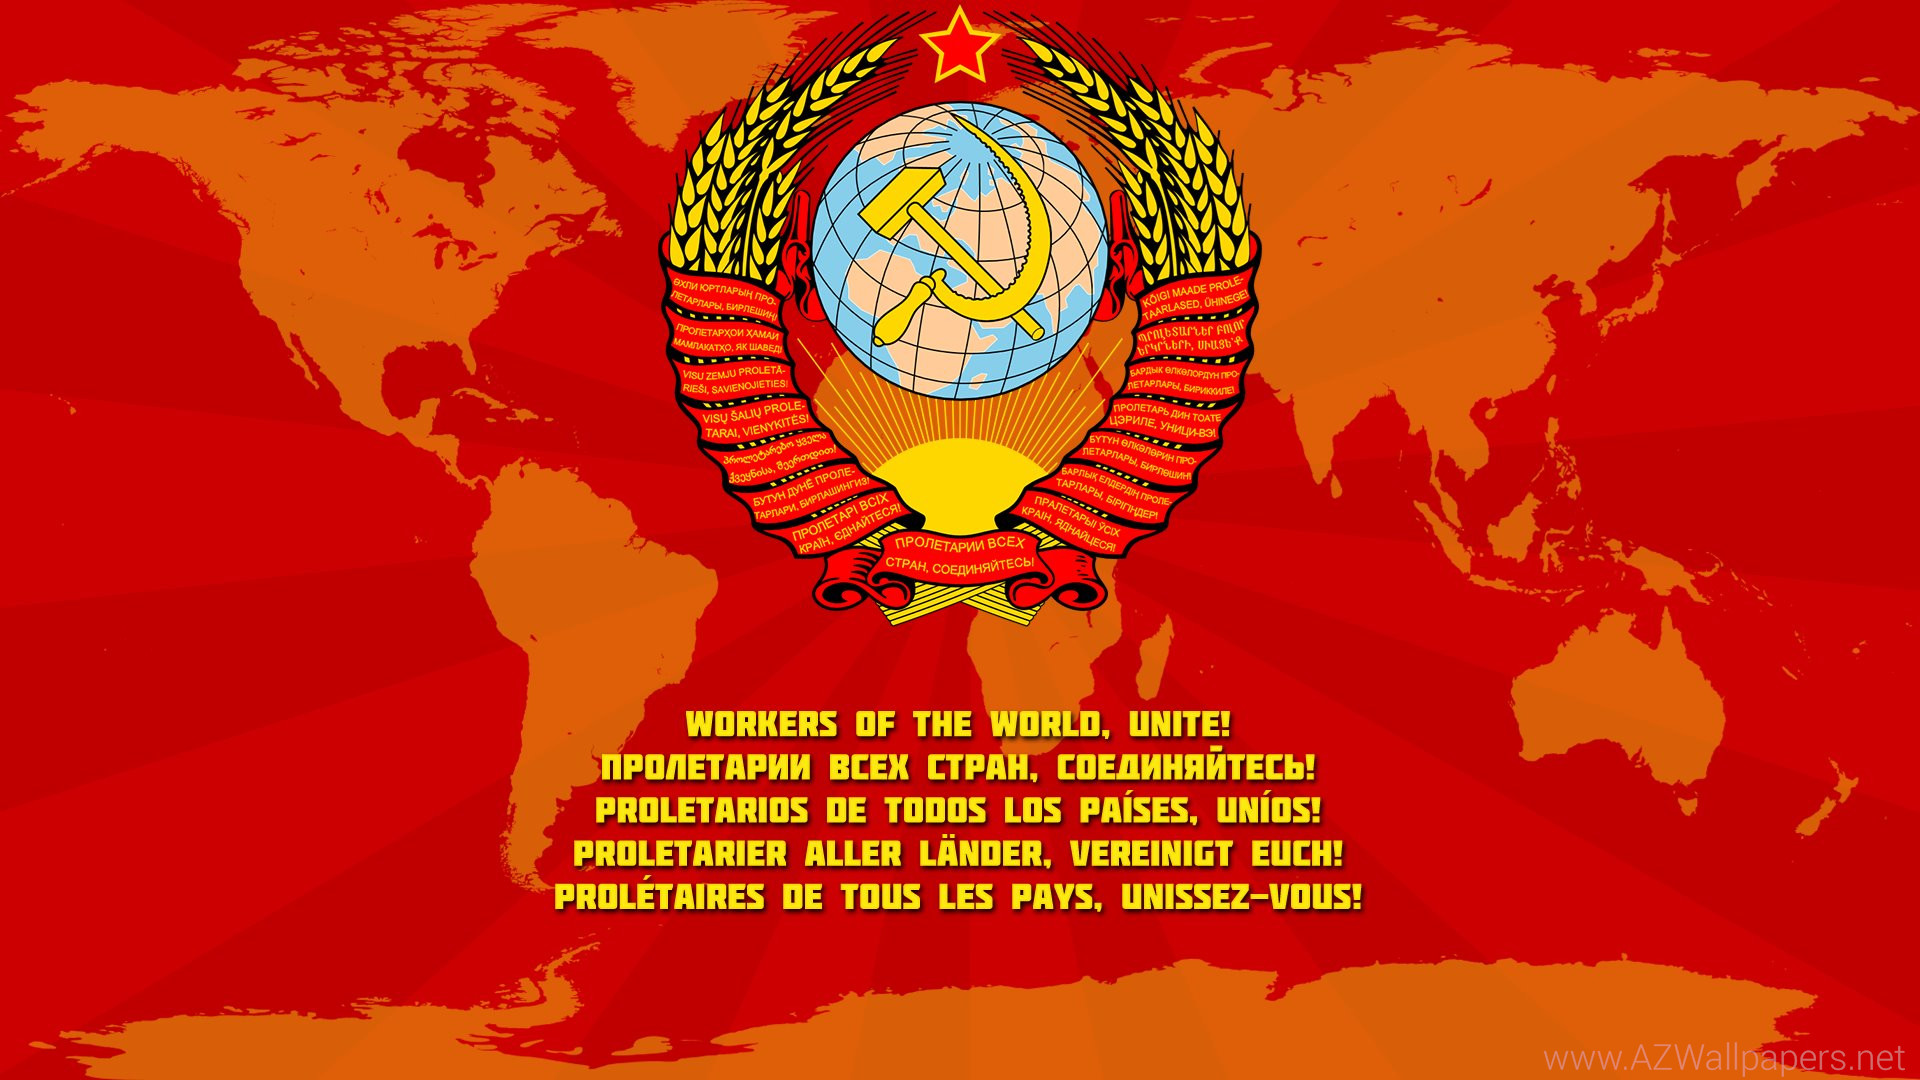 共産主義の旗の壁紙,象徴,国旗,図,家紋,グラフィックス